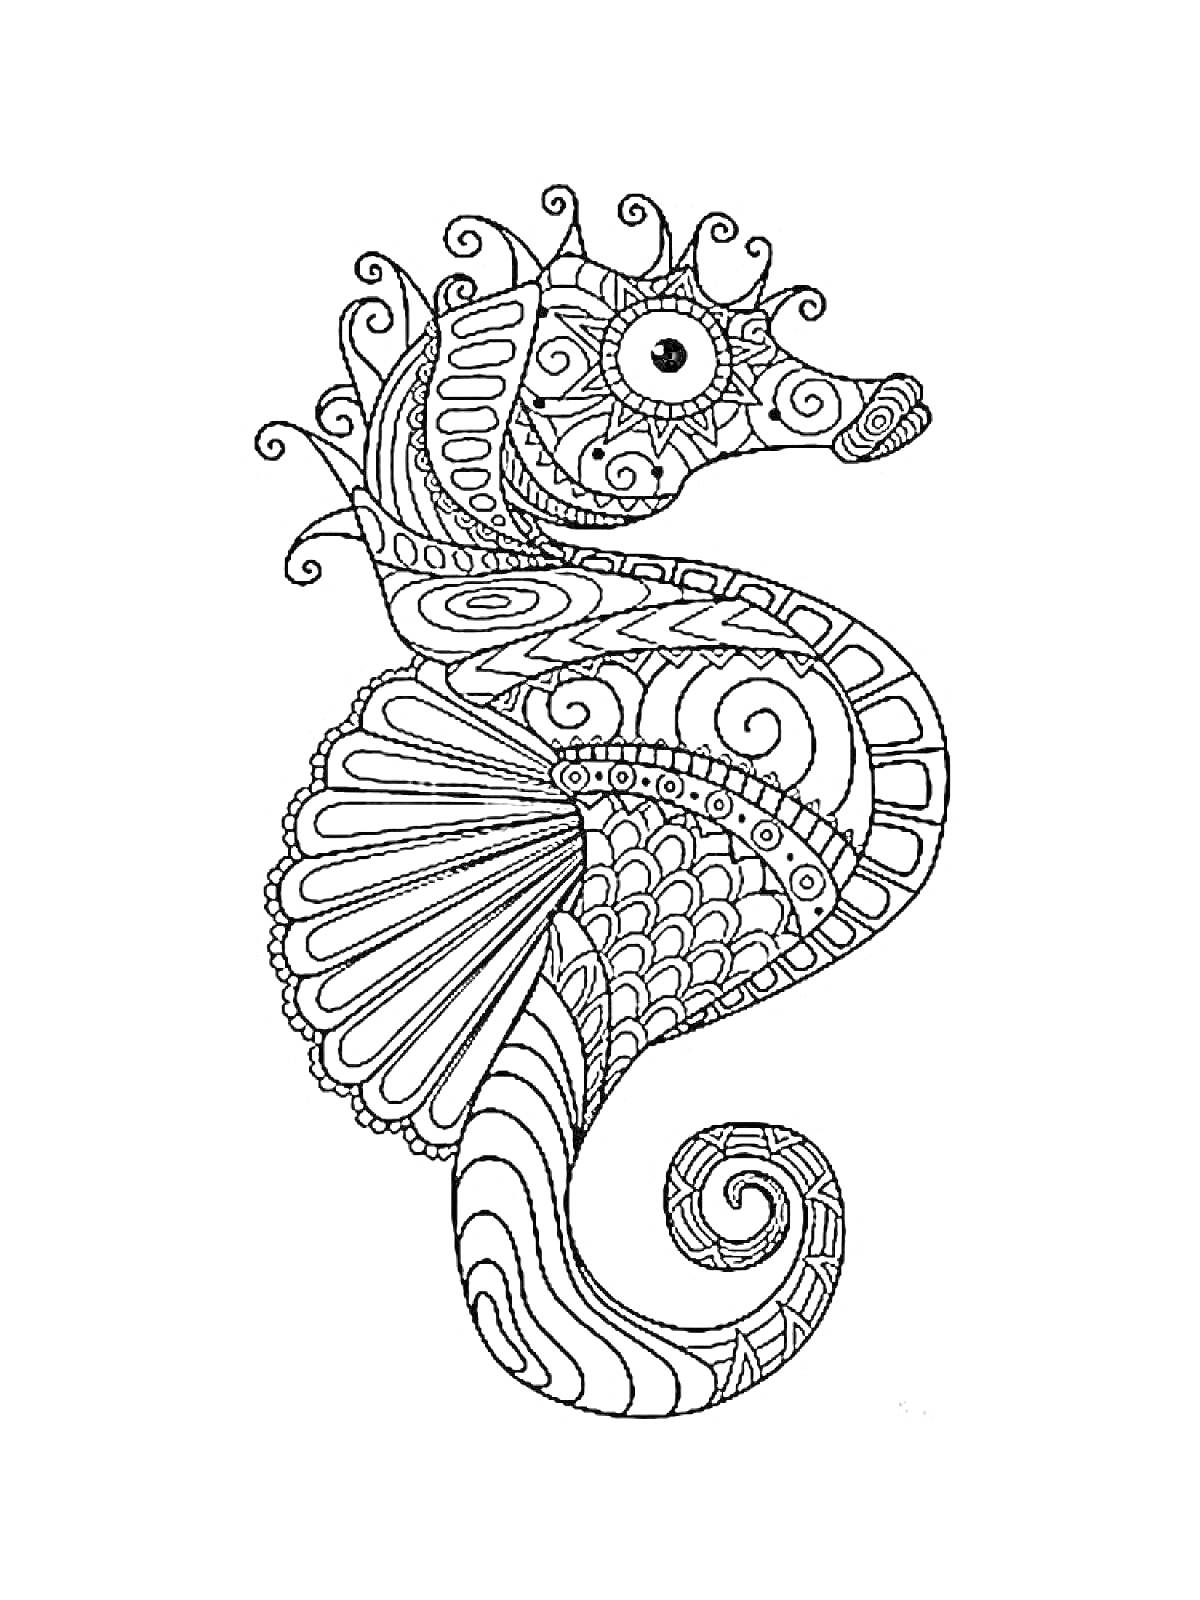 Раскраска Морской конек с узорами и спиралями